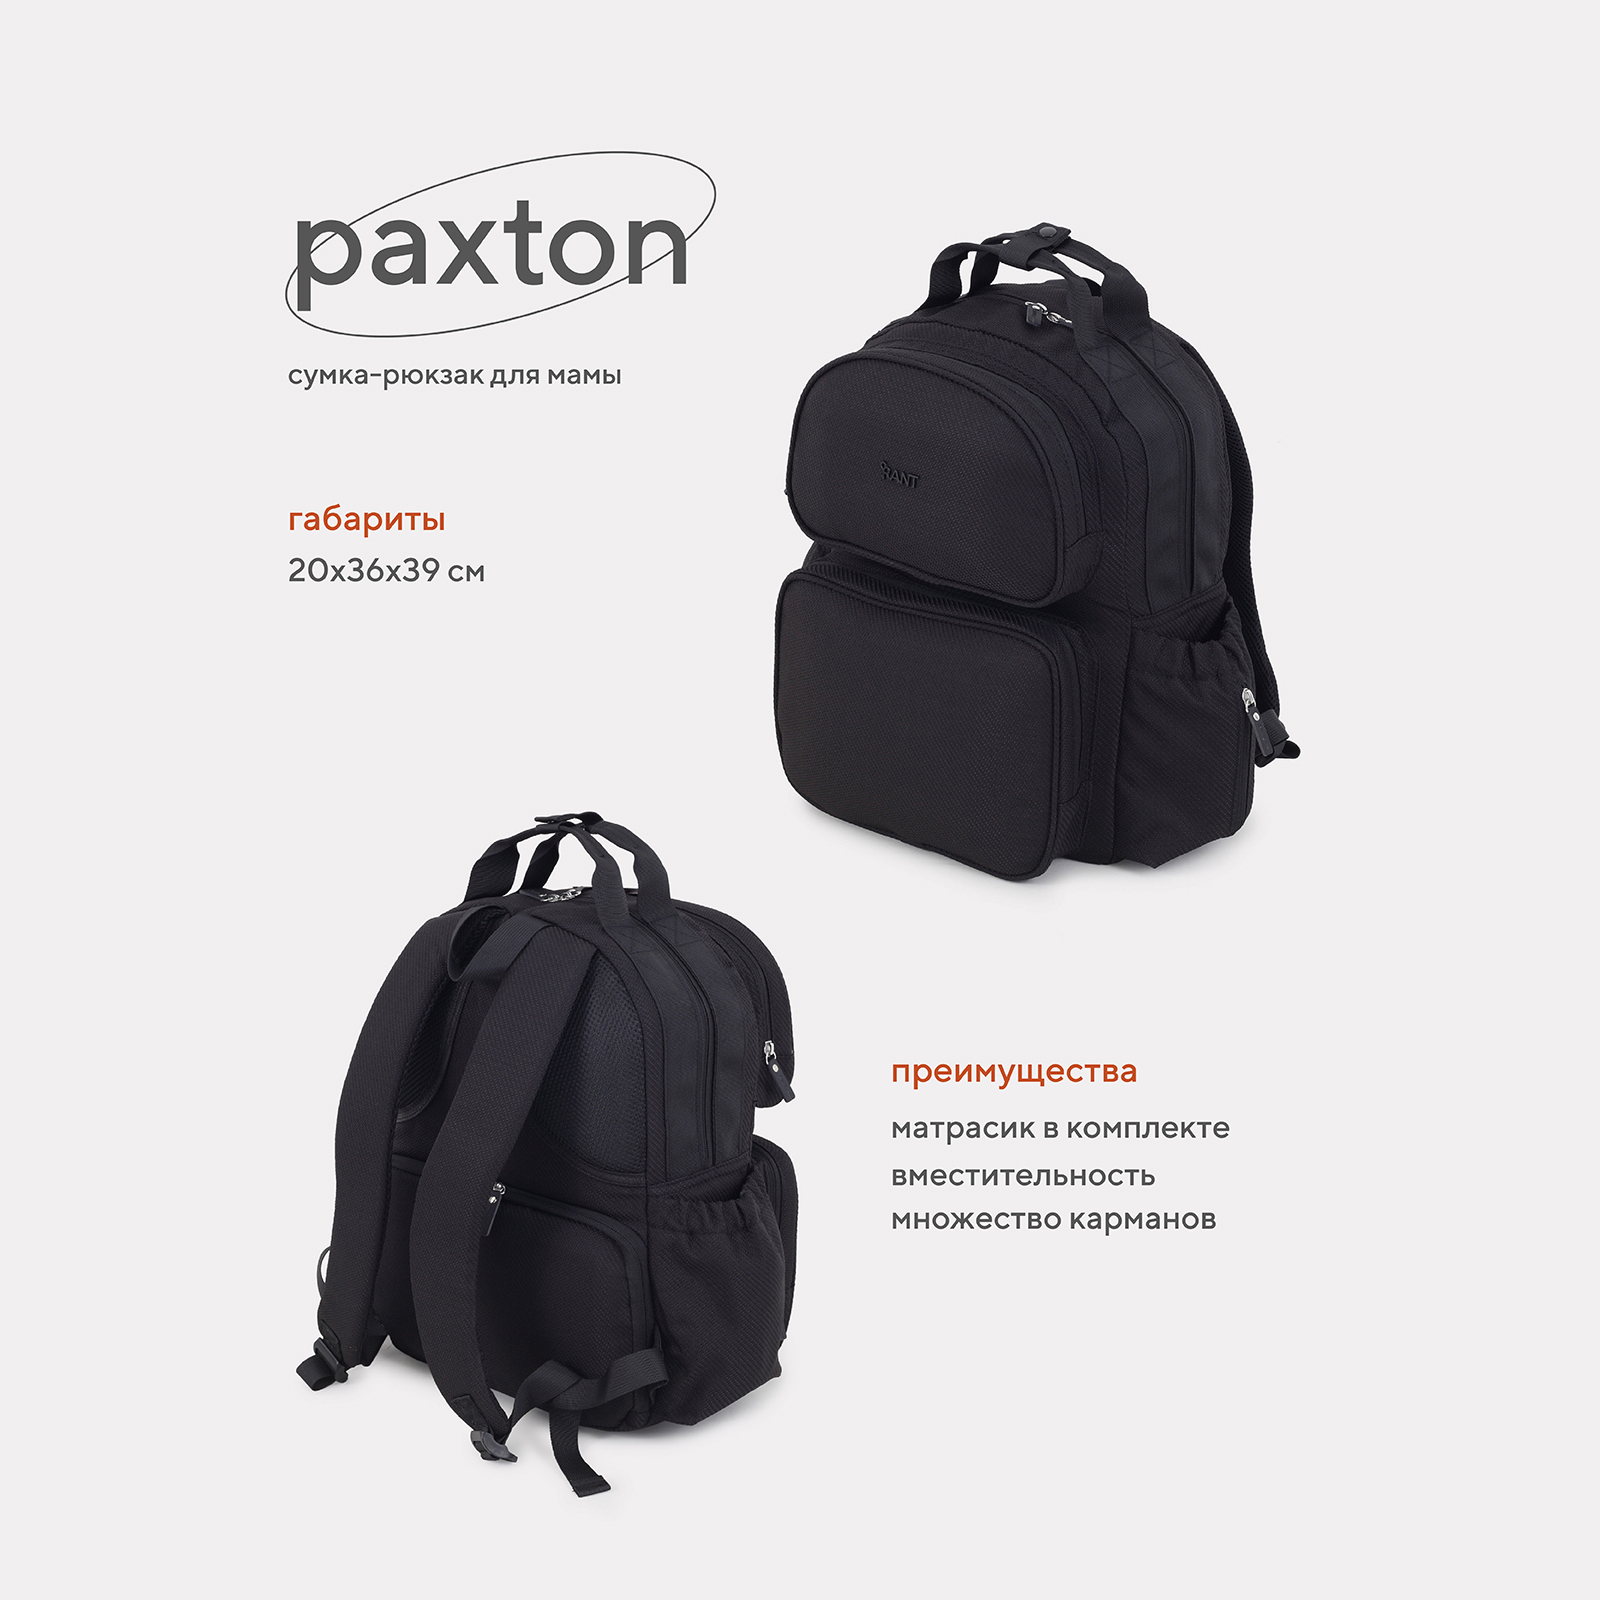 Сумка-рюкзак для мамы RANT Paxton RB008 Black прогулочная коляска dearest 818 plus new black premium set micky с сумкой для мамы